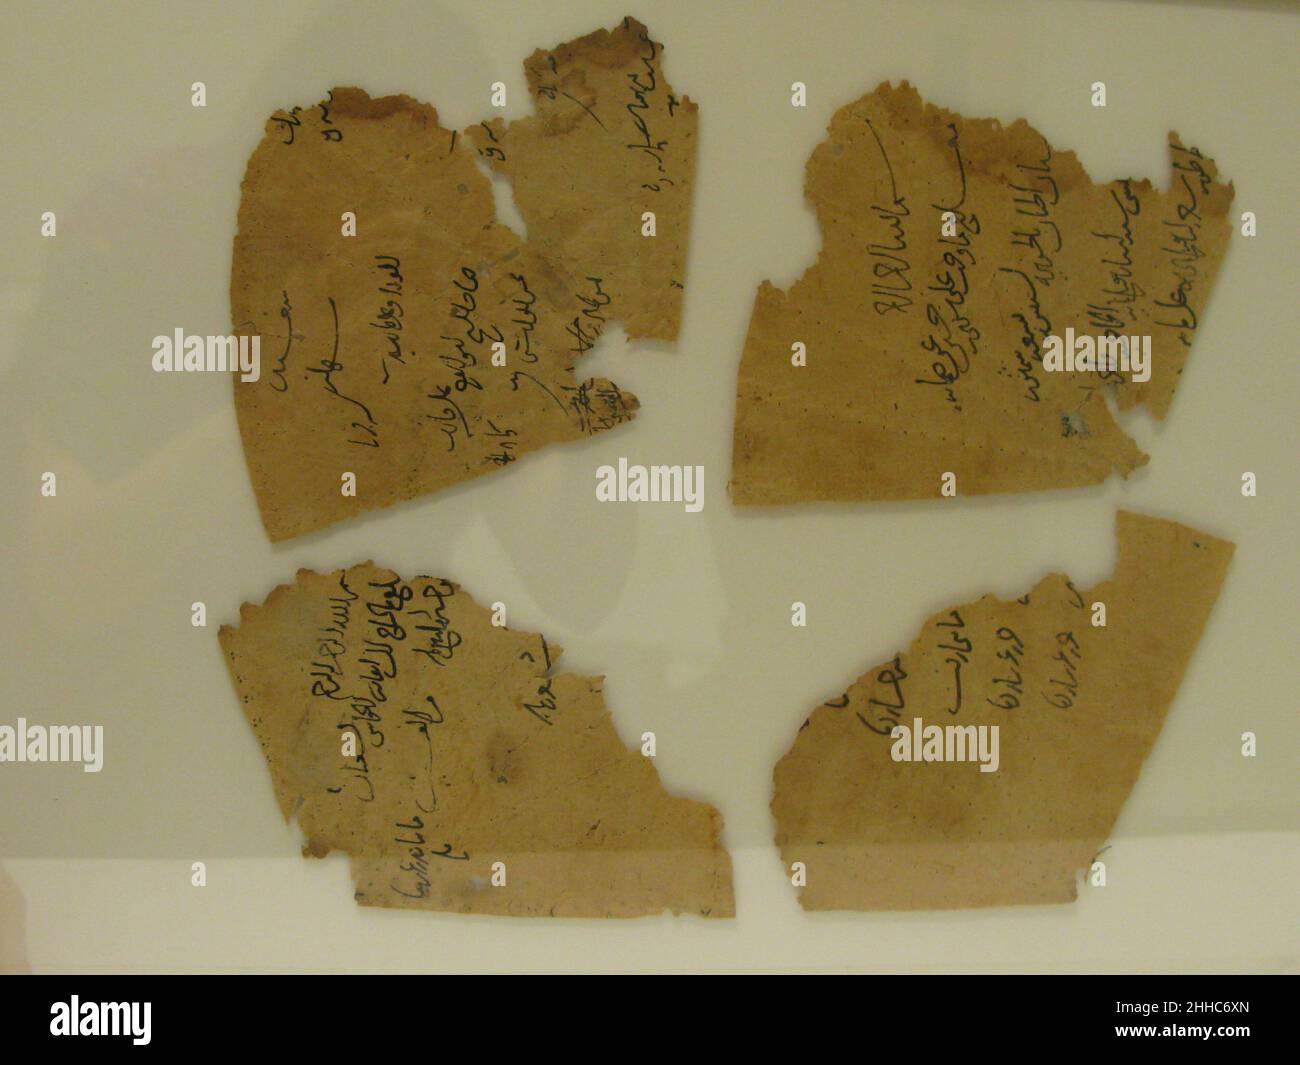 Doublure d'une casquette 12th–13th siècle ces fragments de papier arrivent au Musée comme doublure intérieure d'une casquette en soie (46.156.11a).Les lignes pliées très évidentes sont très probablement liées à cette utilisation.Alors que le textile de la casquette est attribué à Seljuq Iran, le style des inscriptions sur ces fragments de papier est semblable à Ayyubid, Fatimide tardif ou Mamluk précoce cursive scripts.Doublure d'un bouchon 450729 Banque D'Images